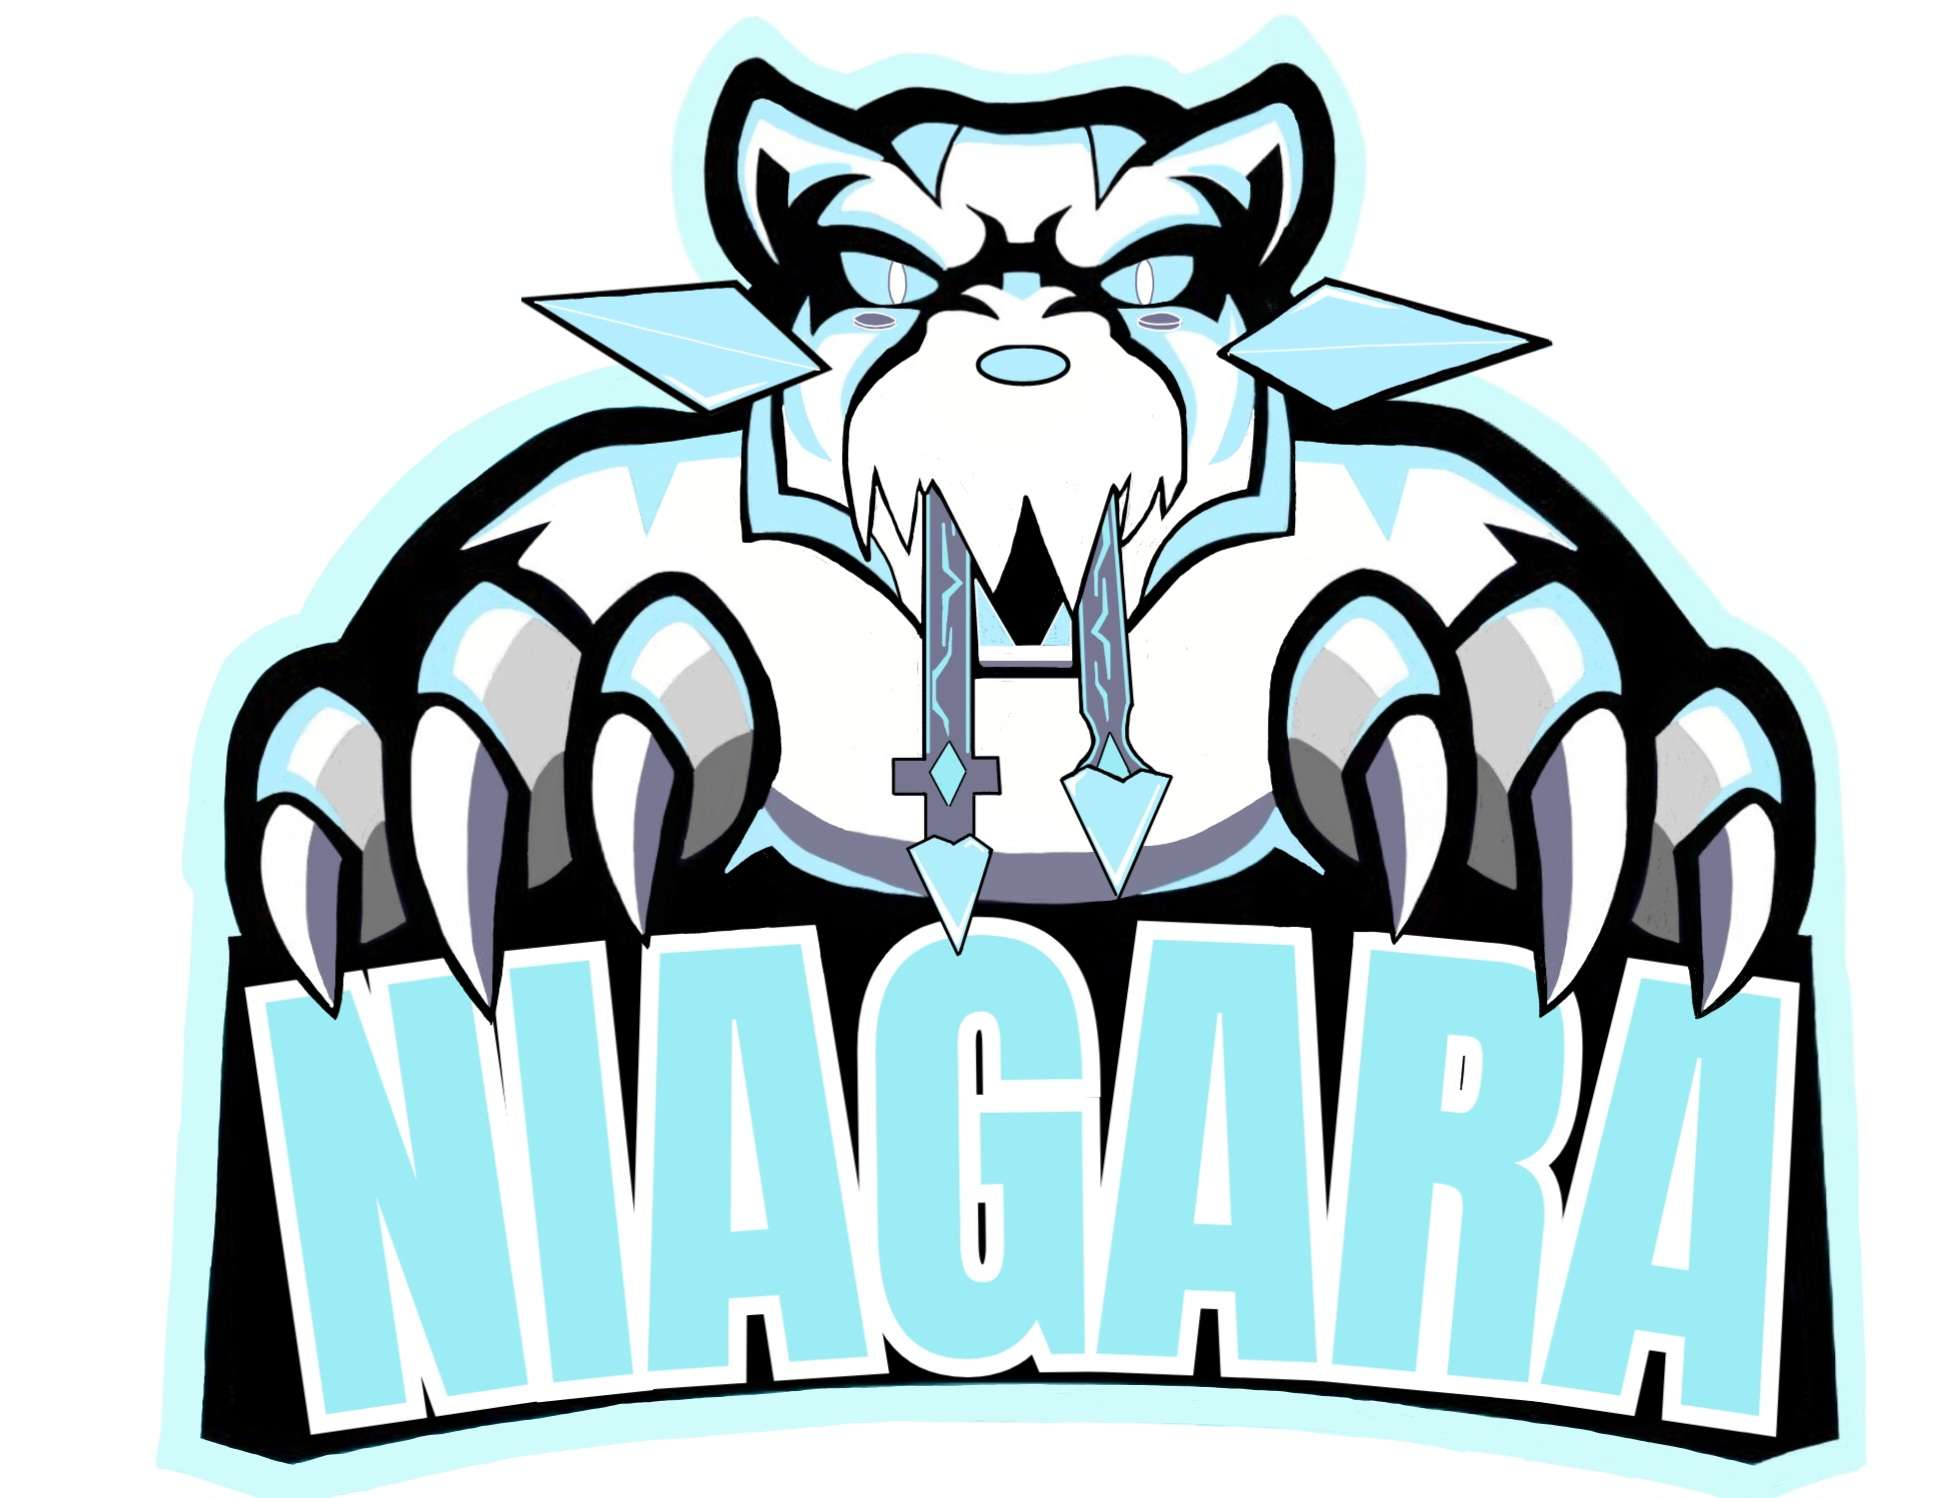 Team Niagara.jpg